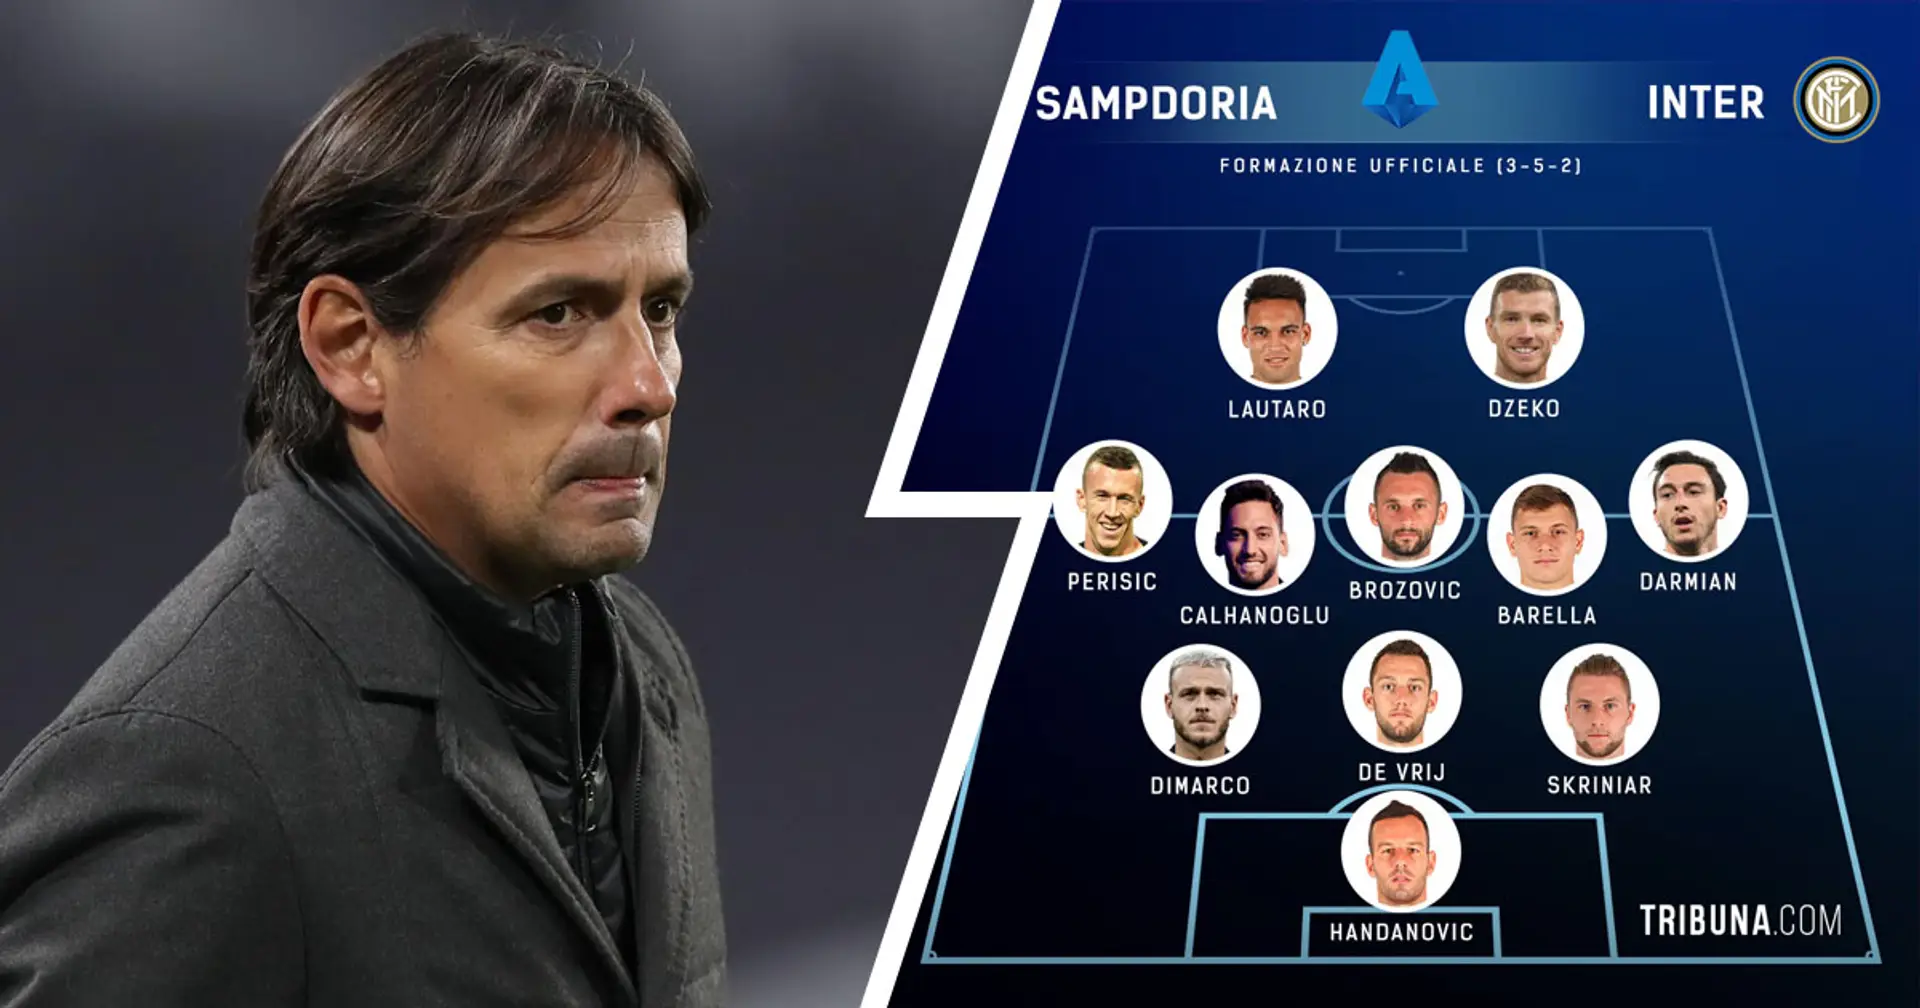 UFFICIALE| La formazione scelta da Simone Inzaghi per la sfida contro la Sampdoria